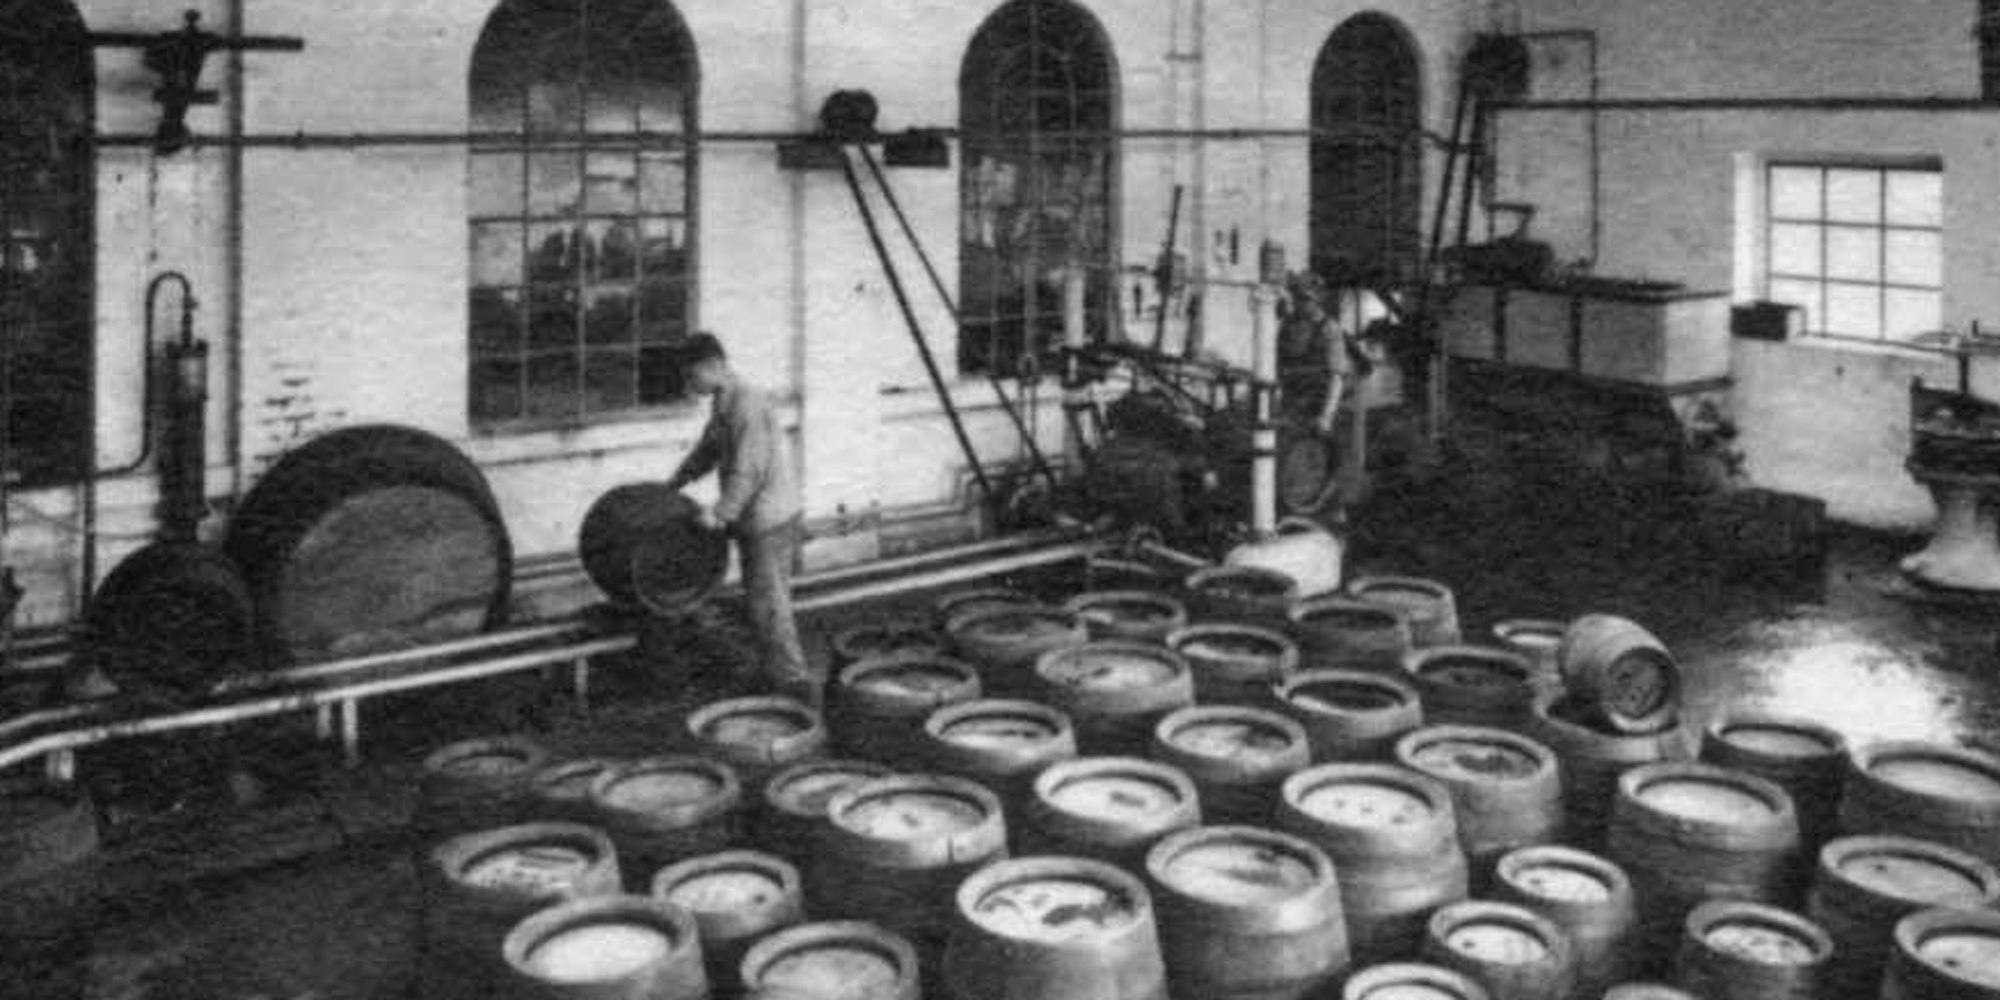 Die Arbeit in der Brauerei war körperlich anstrengend. Auf dem Bild von etwa 1929 reinigt ein Arbeiter die Bierfässer.